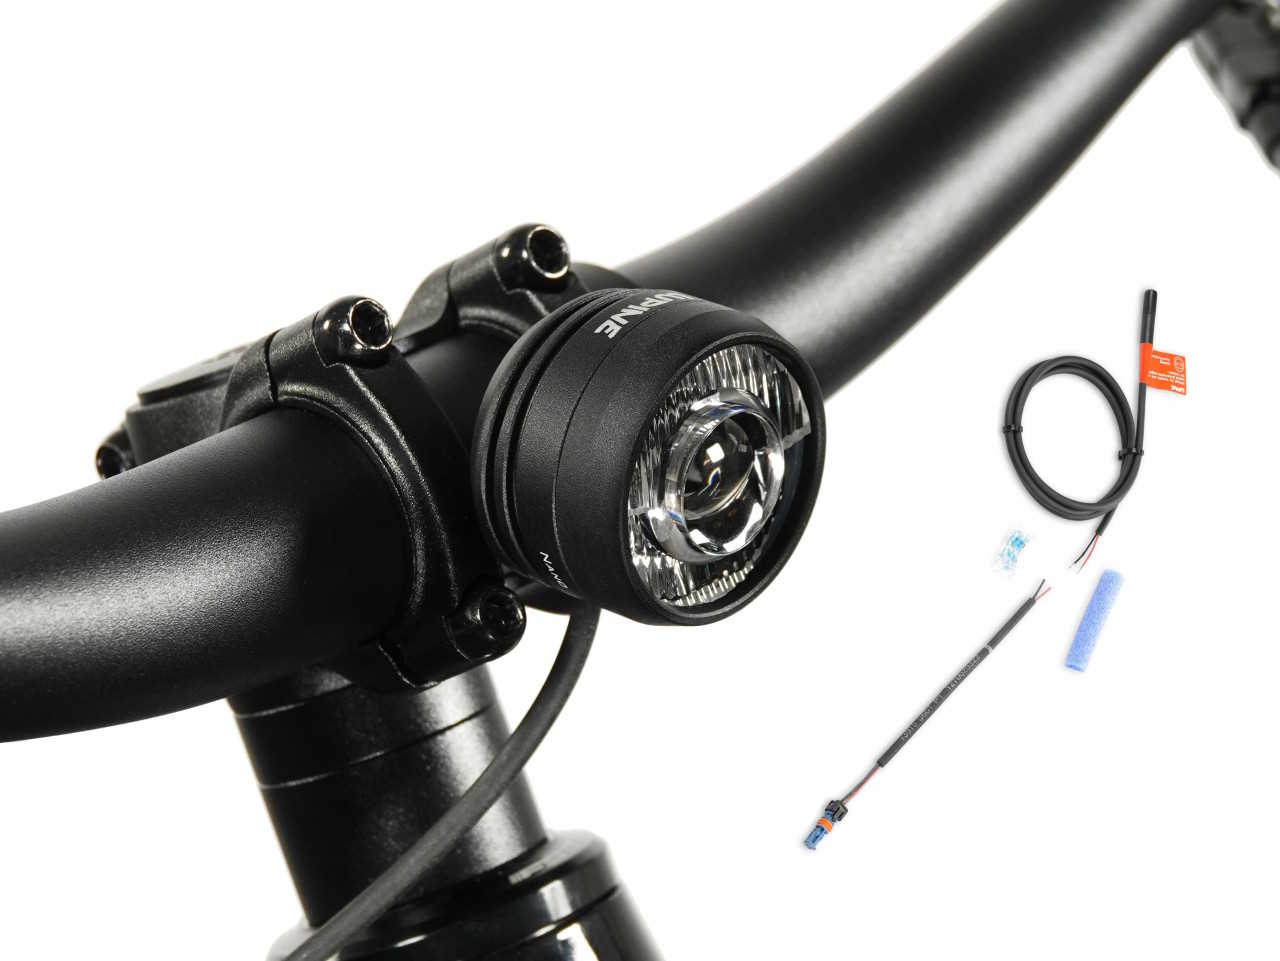 Produktbild von Lupine SL Nano für E-Bikes mit Bosch Motor, E-Bike Beleuchtung mit 900 Lumen Fernlicht, Lenkerhalter 35mm + Kabelfernbedienung